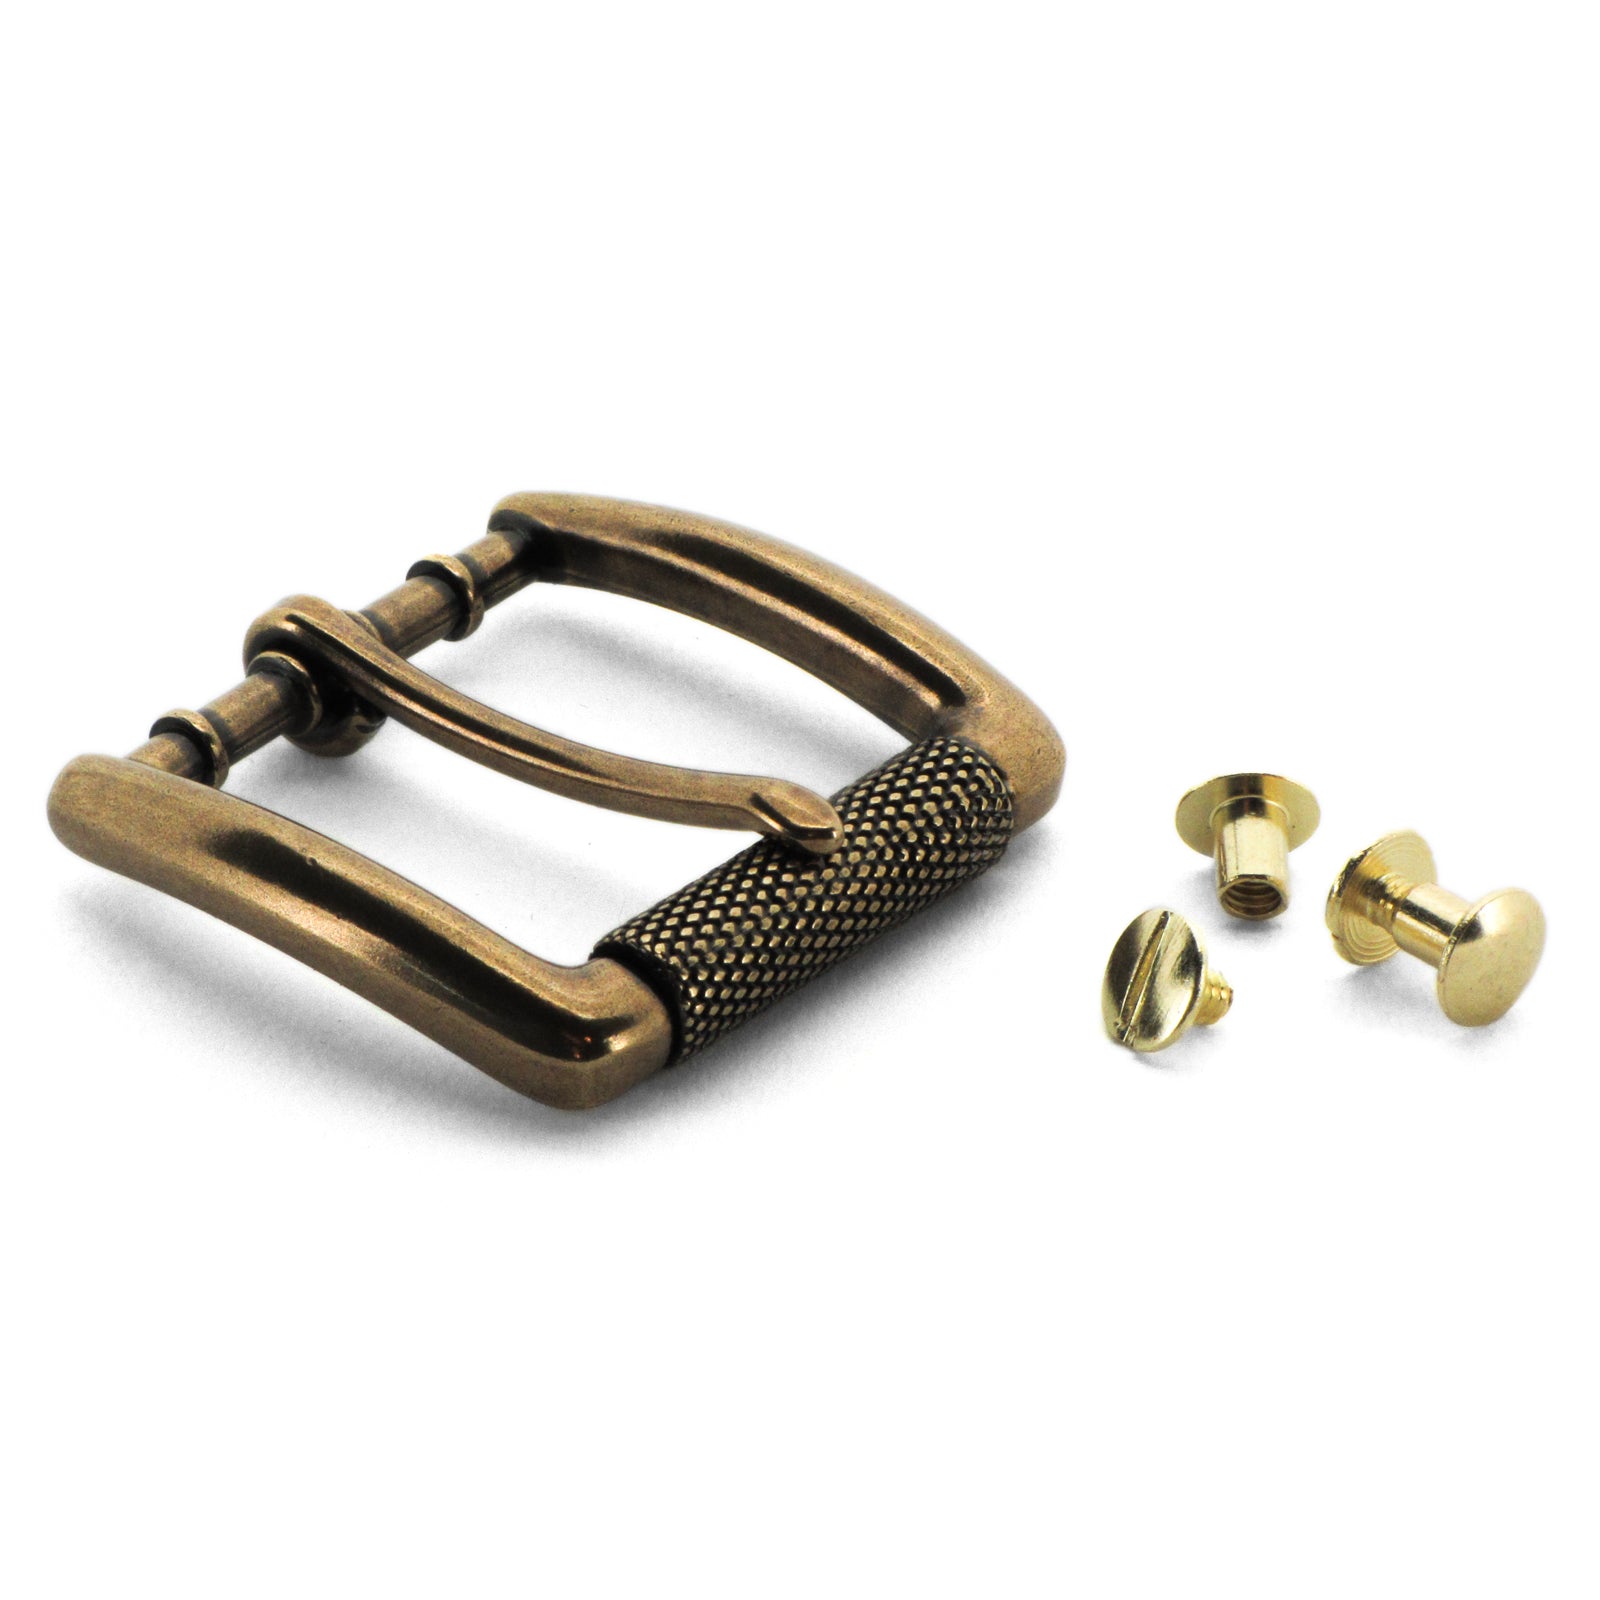 https://www.thebeltman.net/cdn/shop/products/gun-belt-buckle-antique-brass-textured-roller-with-chicago-screws.jpg?v=1506381281